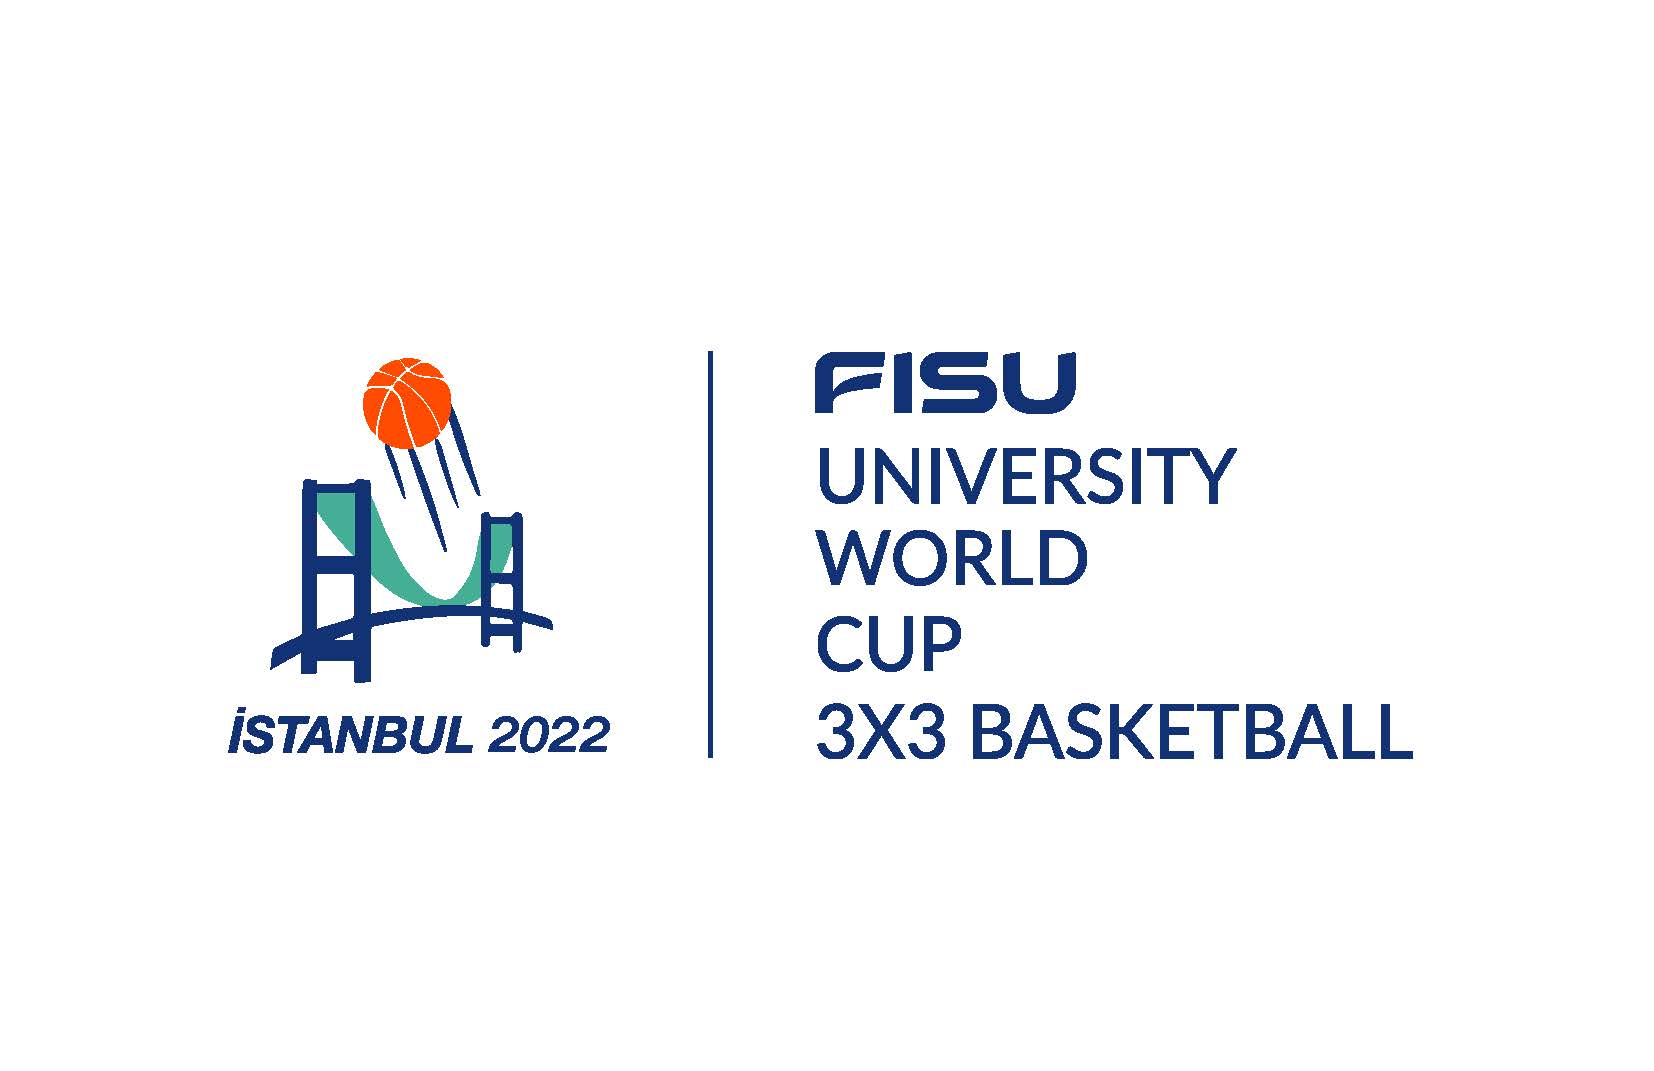 FISU University World Cup 3x3 Basketball